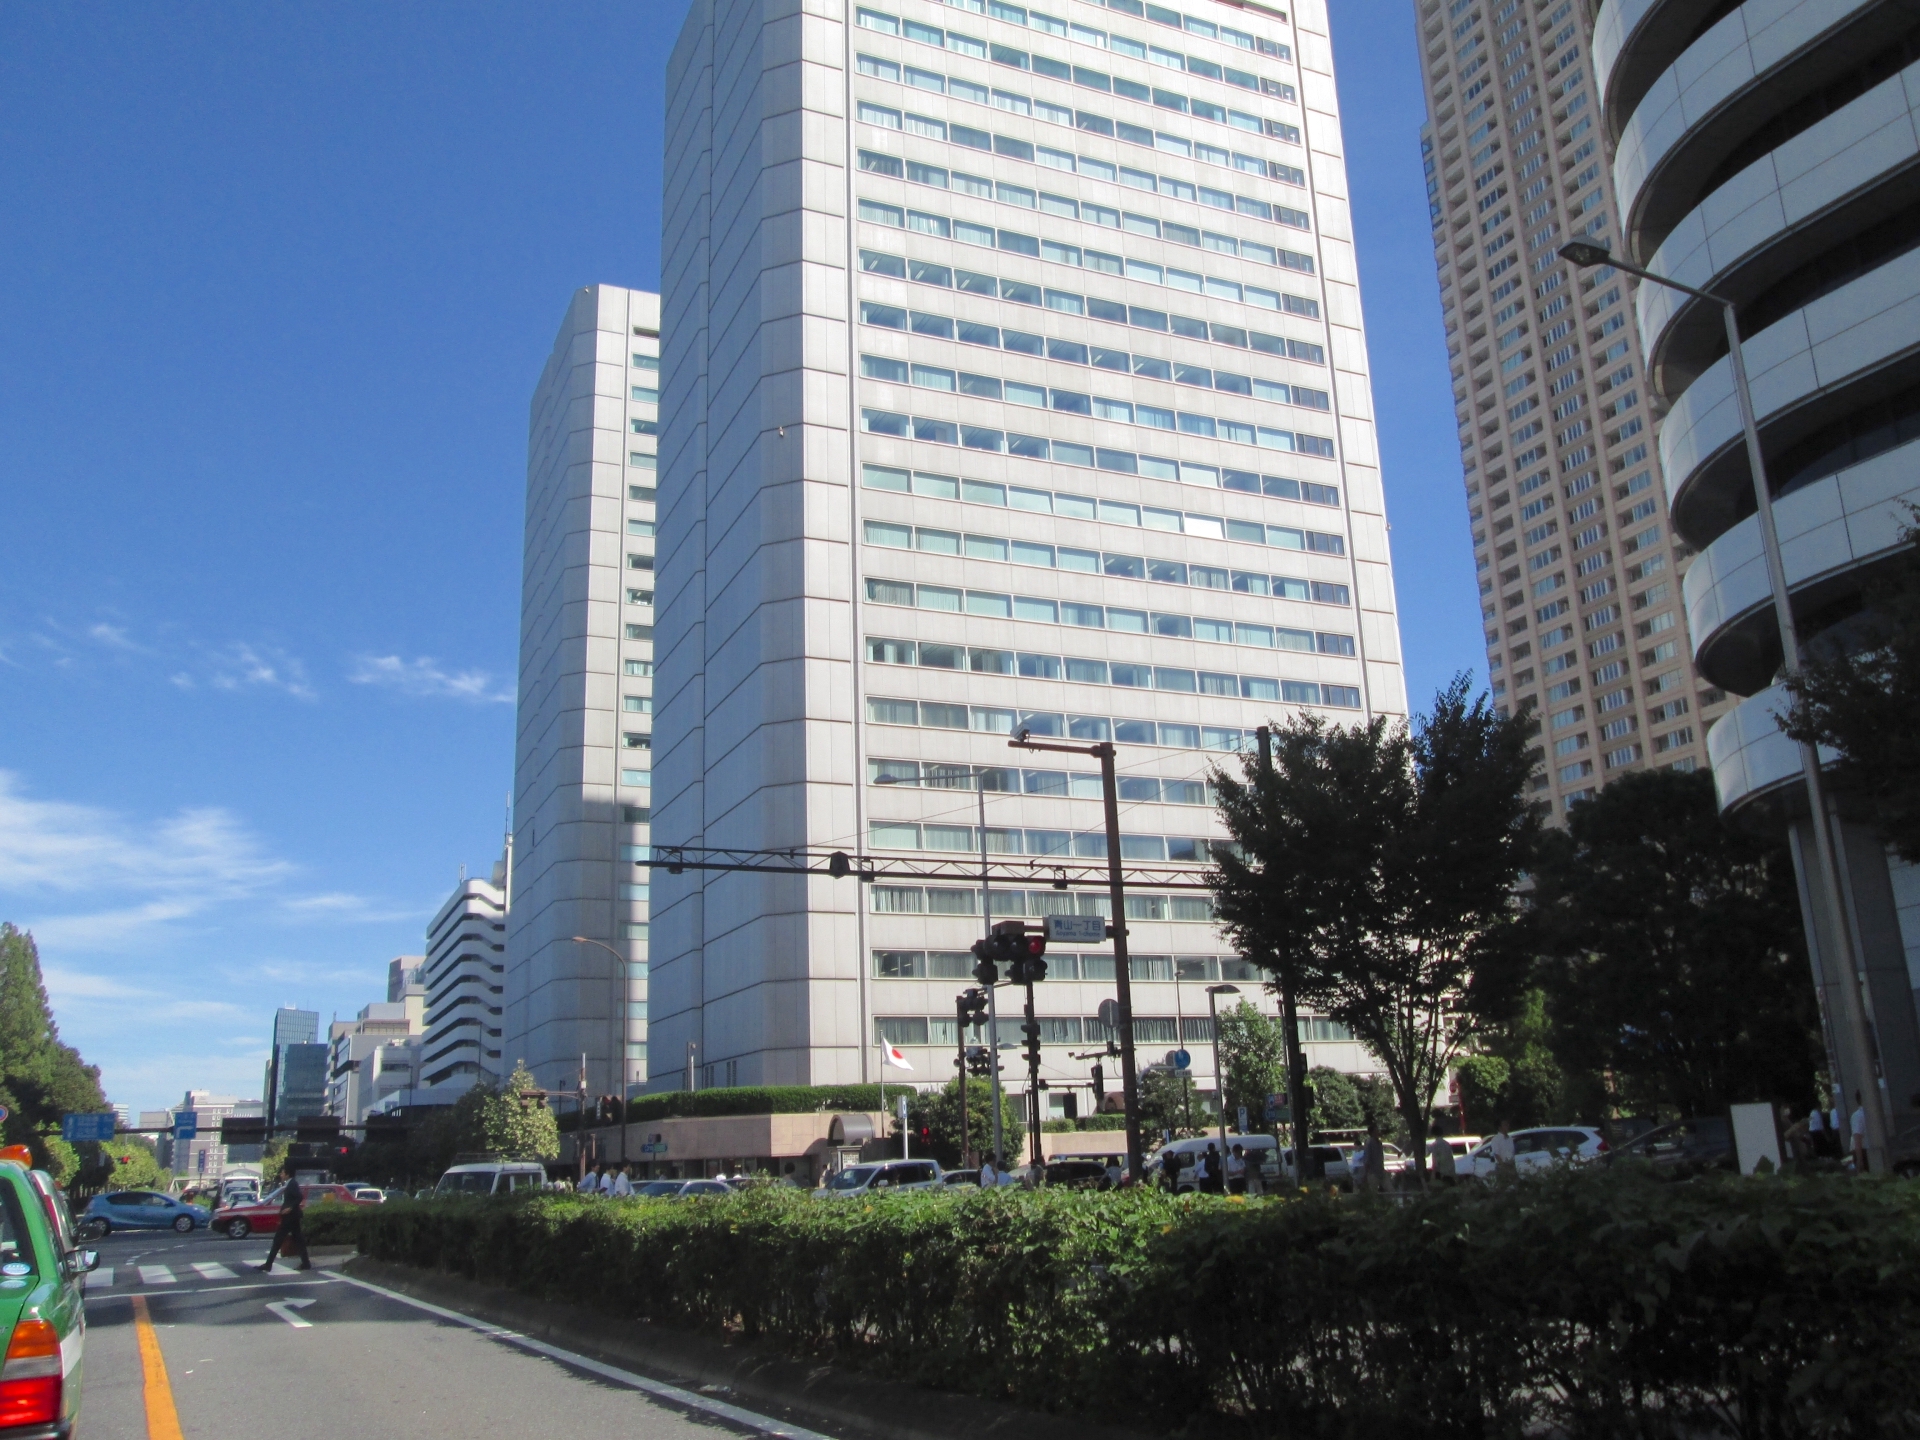 明治大学 和泉 駿河台 生田キャンパス 周辺のおすすめホテル 最安値で泊まれる方法も紹介 どこよりも最安値でホテルを探せる おとっくま